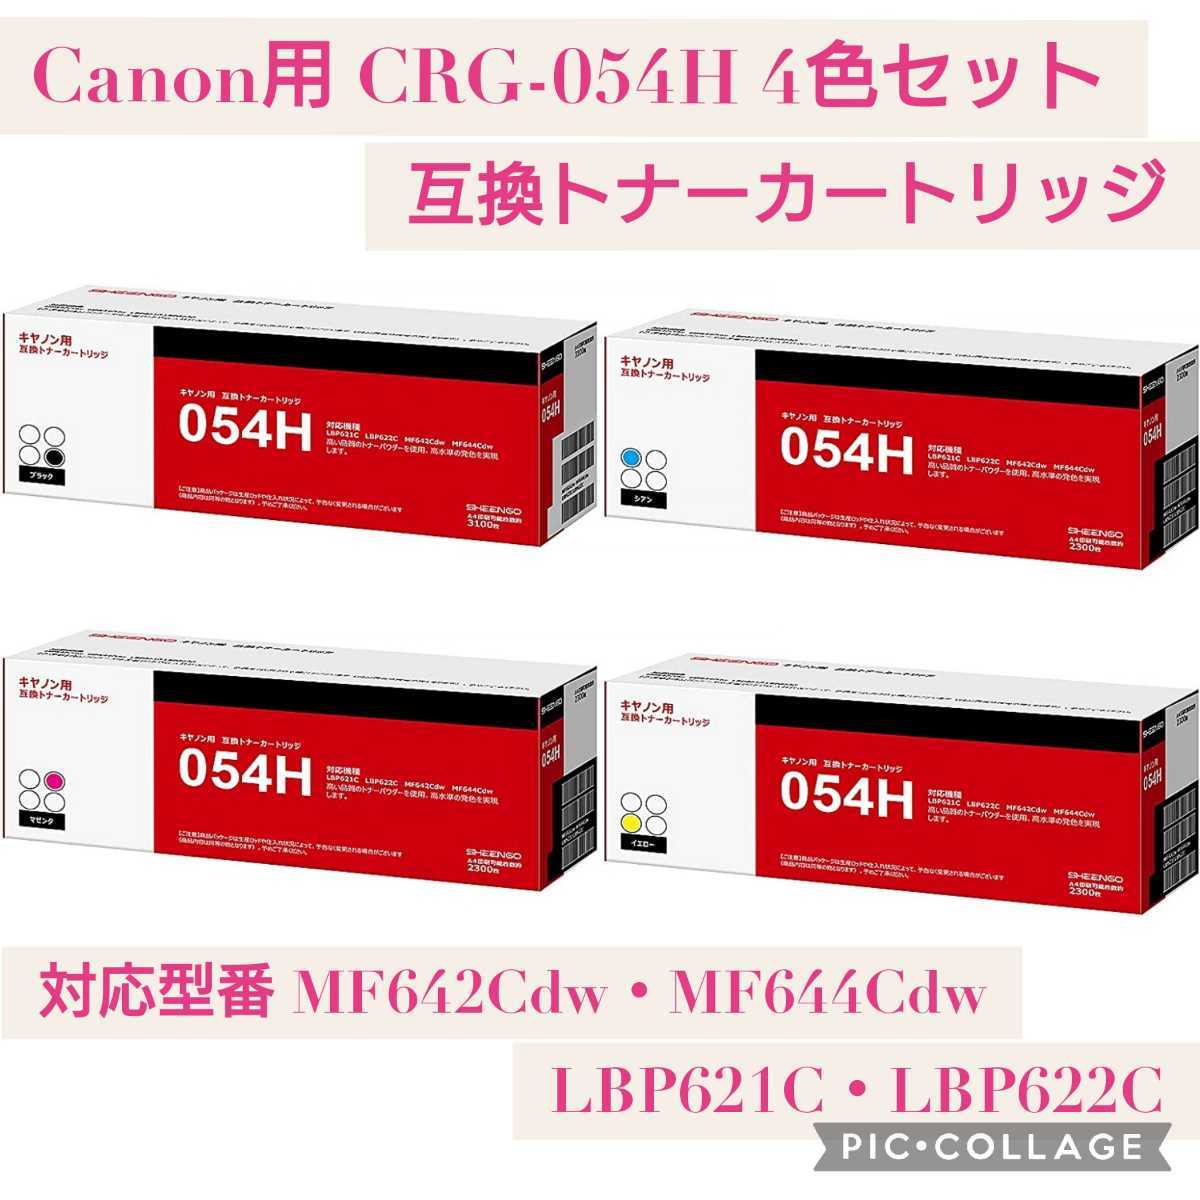 憧れの Canon キャノン用 CRG-054H BK C M Y 4本セット